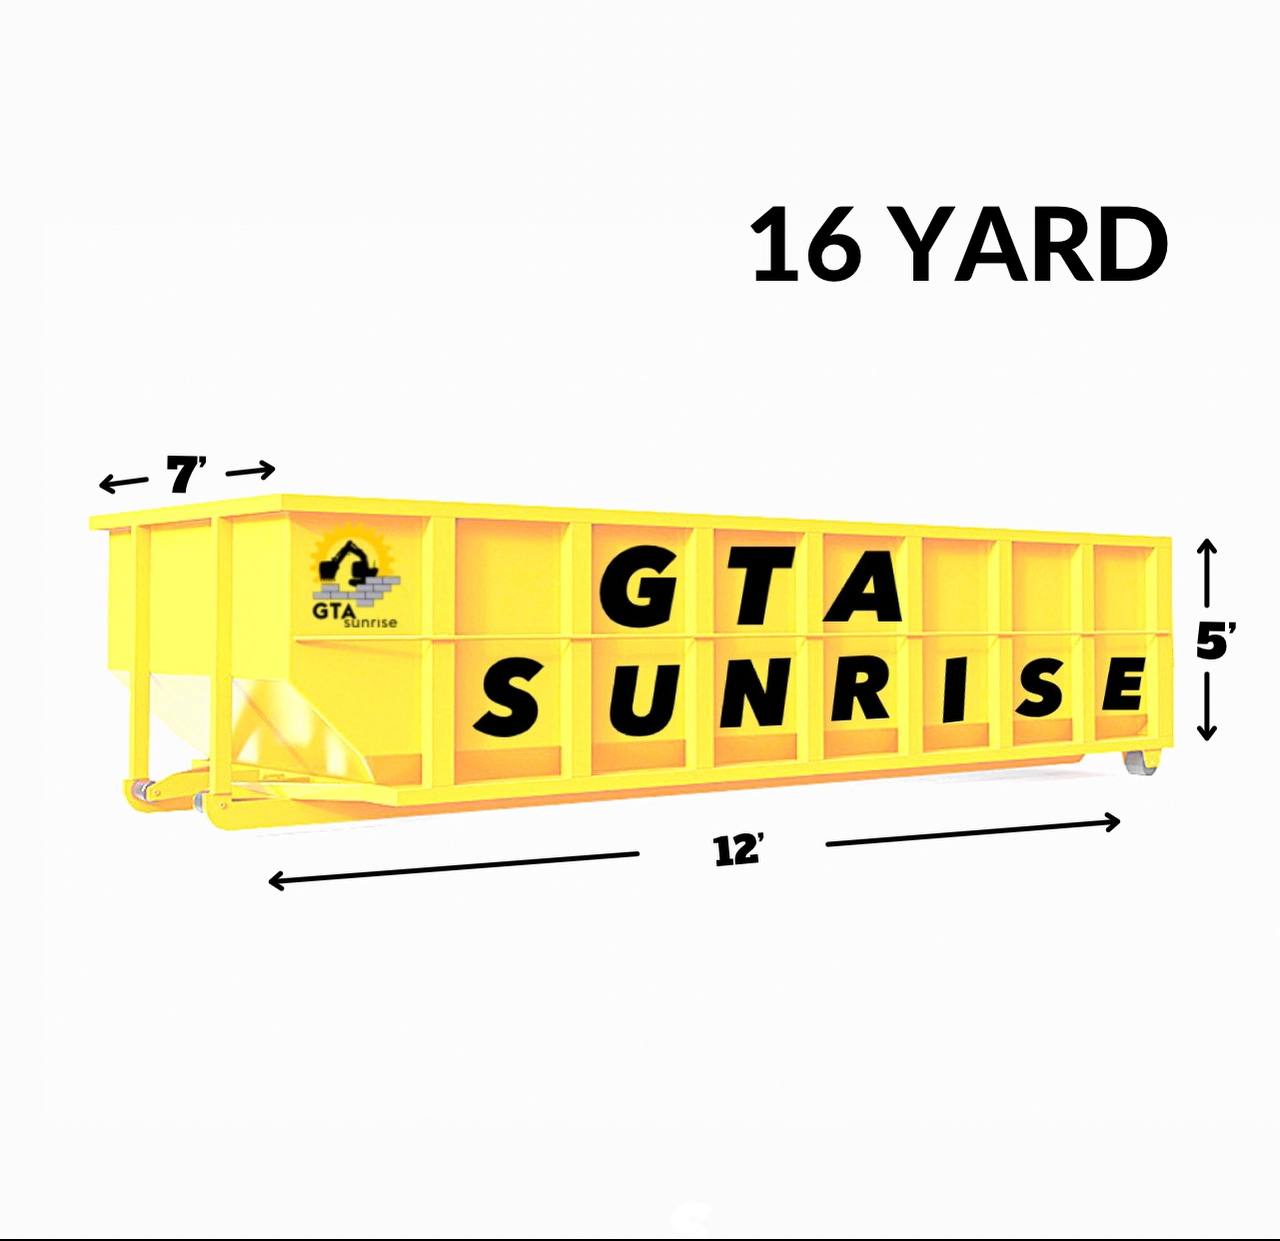 yard bin rental GTA sunrise